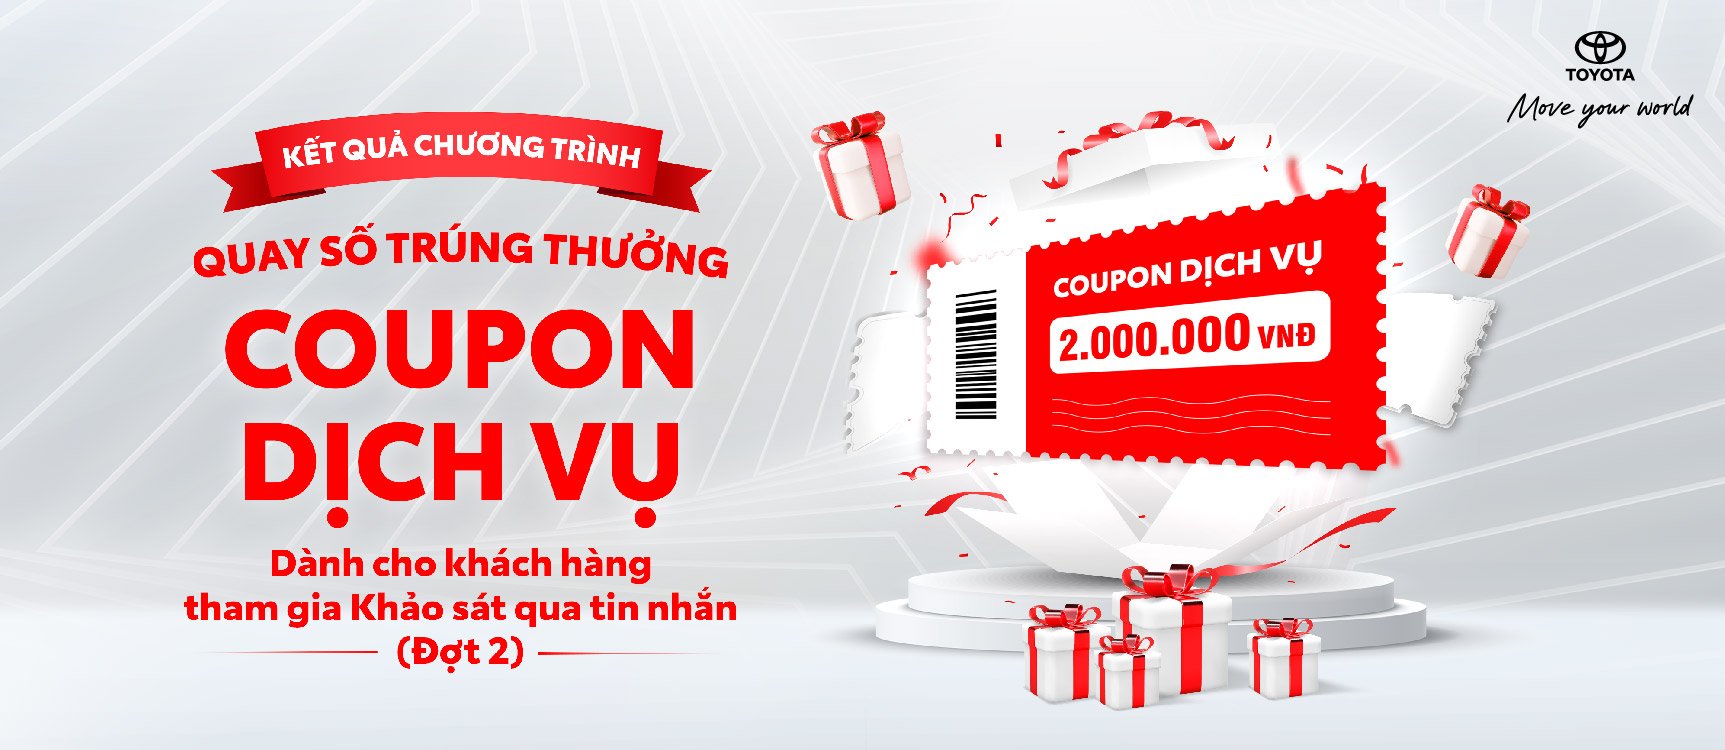 Toyota Việt Nam thông báo kết quả quay số trúng thưởng coupon dịch vụ cho khách hàng làm khảo sát qua tin nhắn đợt 2 